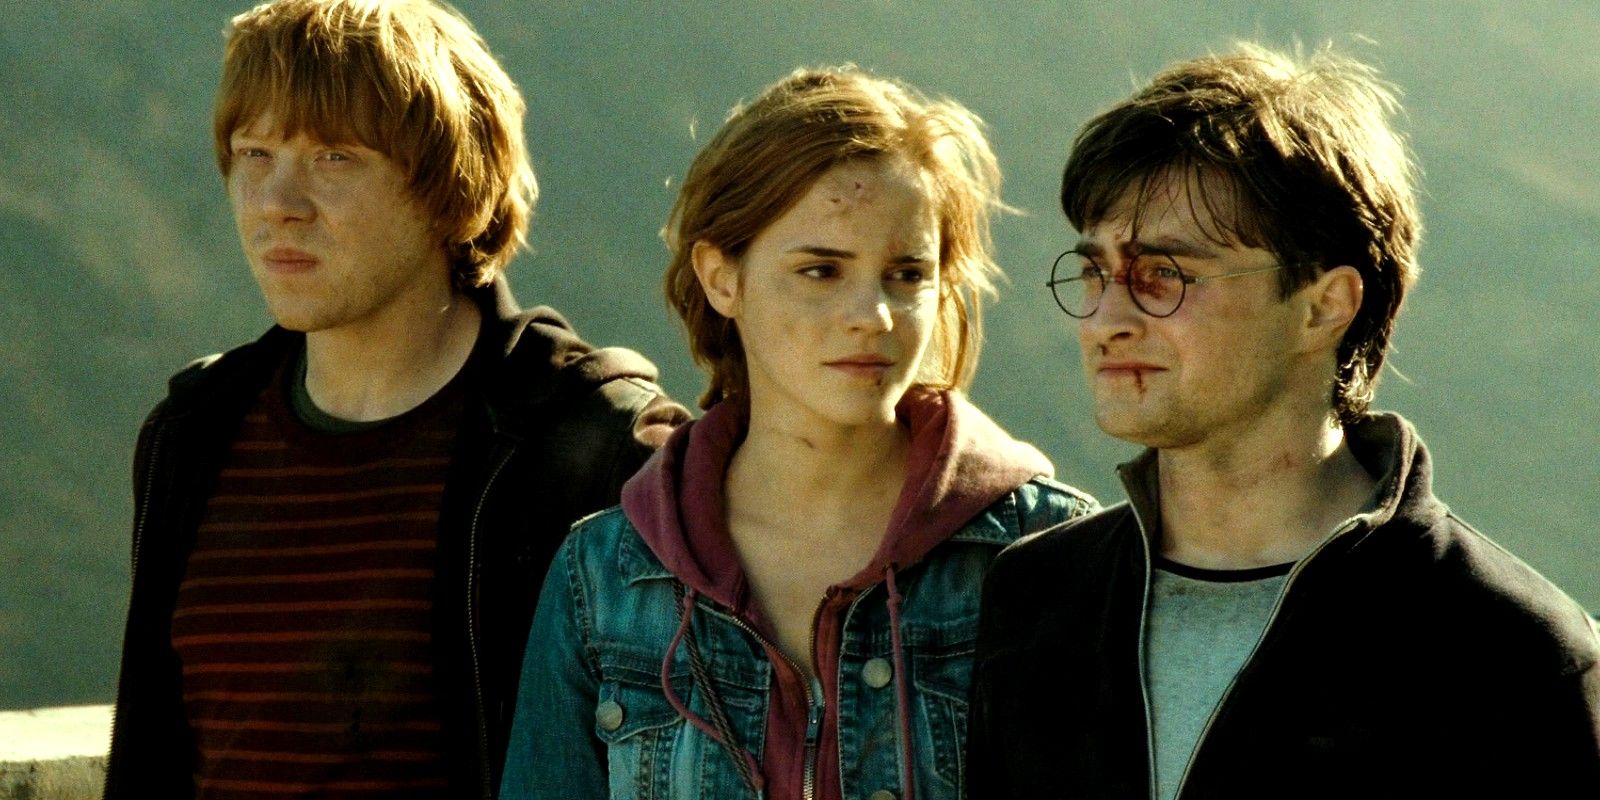 Múltiples espectáculos de Harry Potter son una posibilidad según un nuevo informe